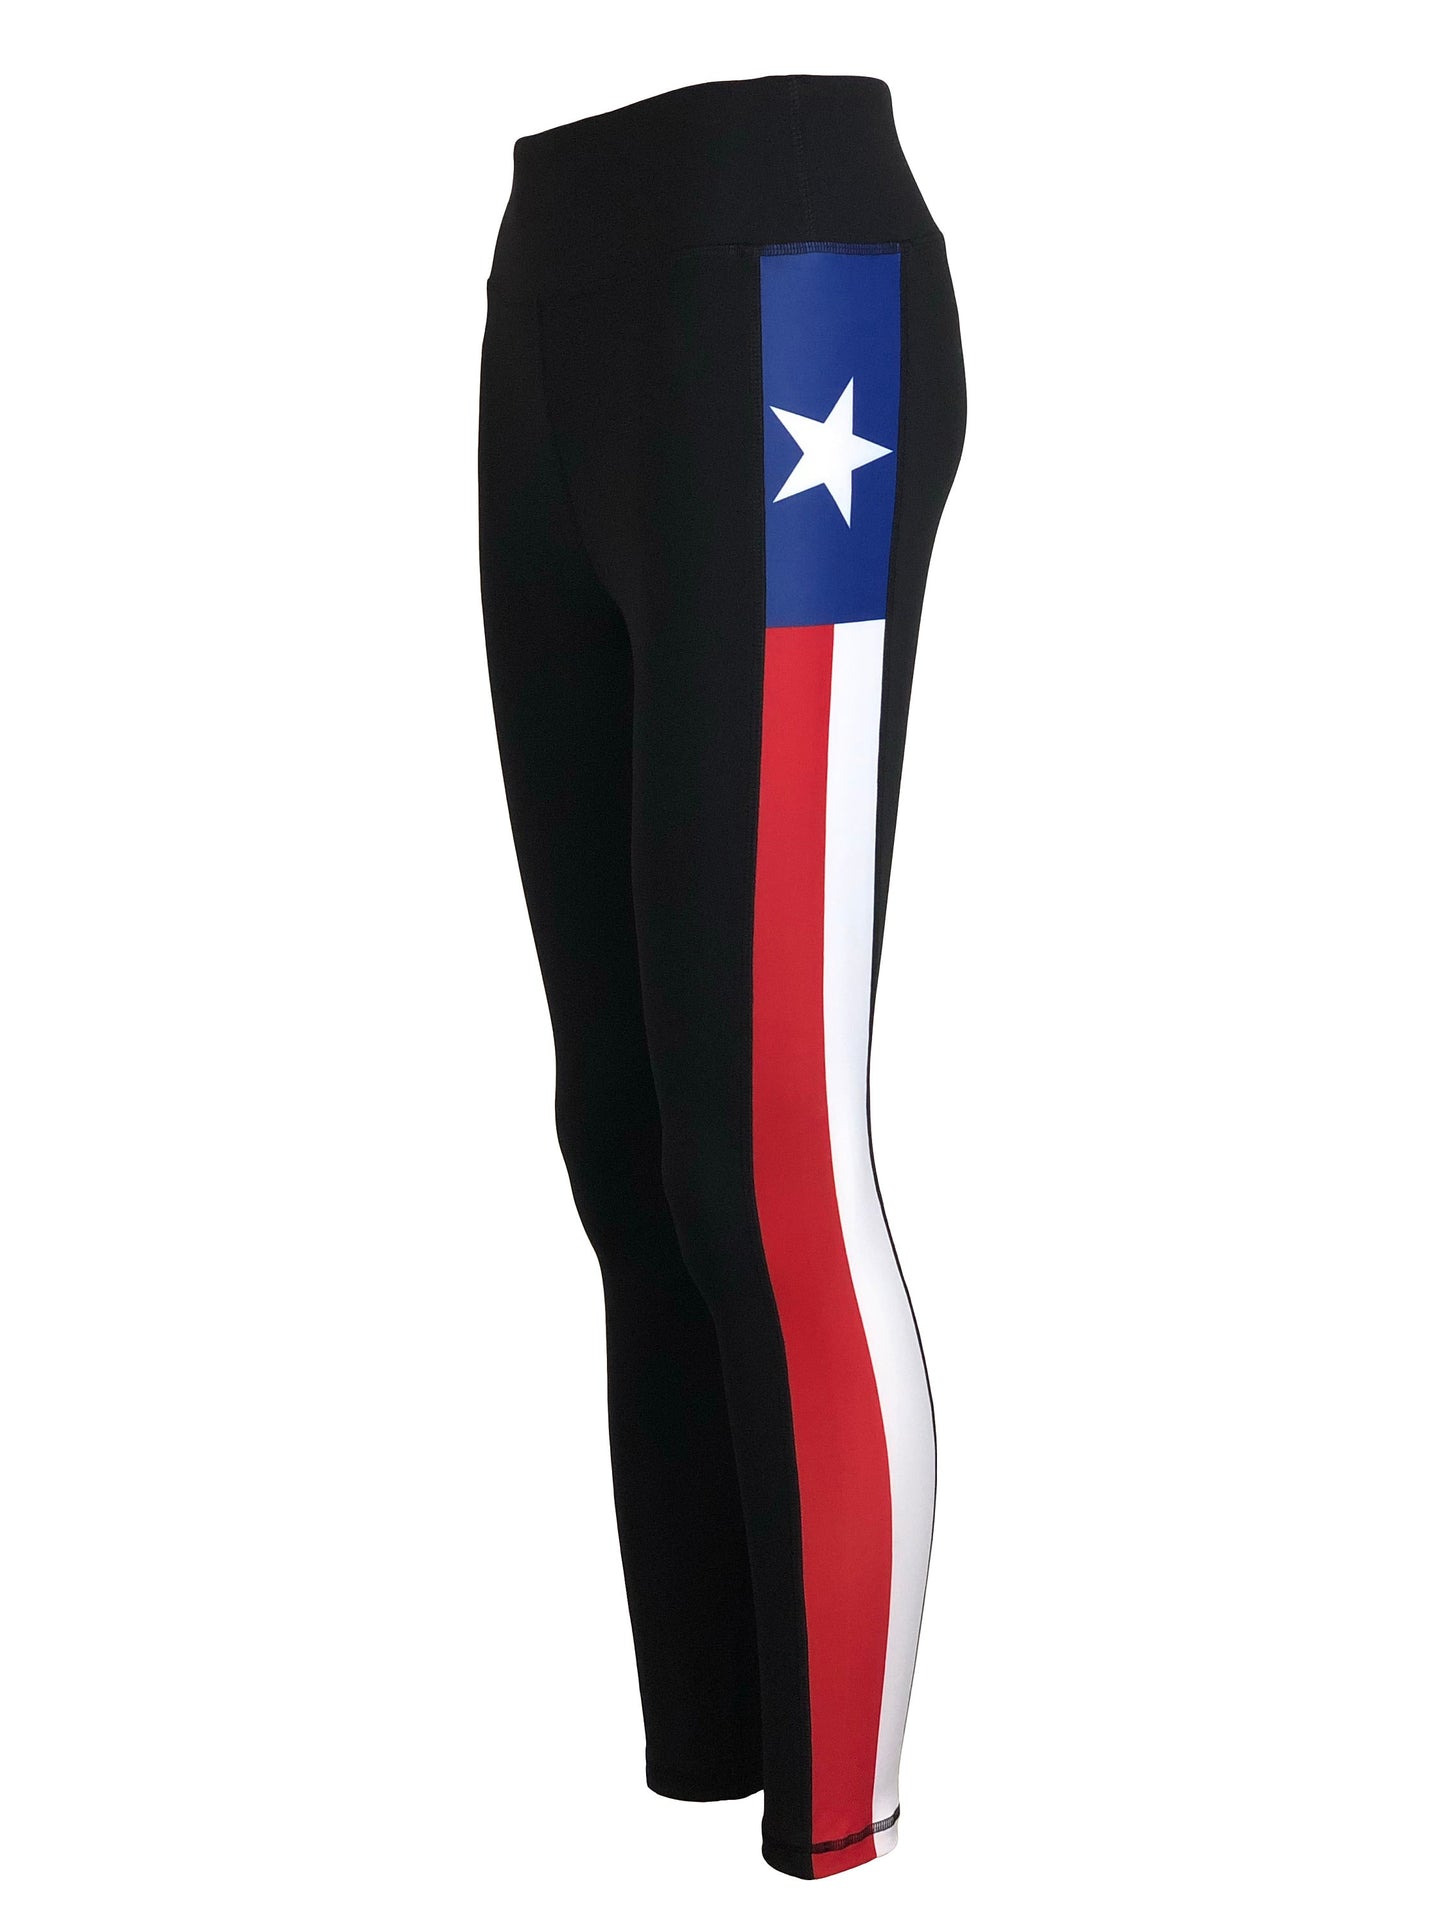 Texas State Flag Women's Full Length Yoga Pant Leggings